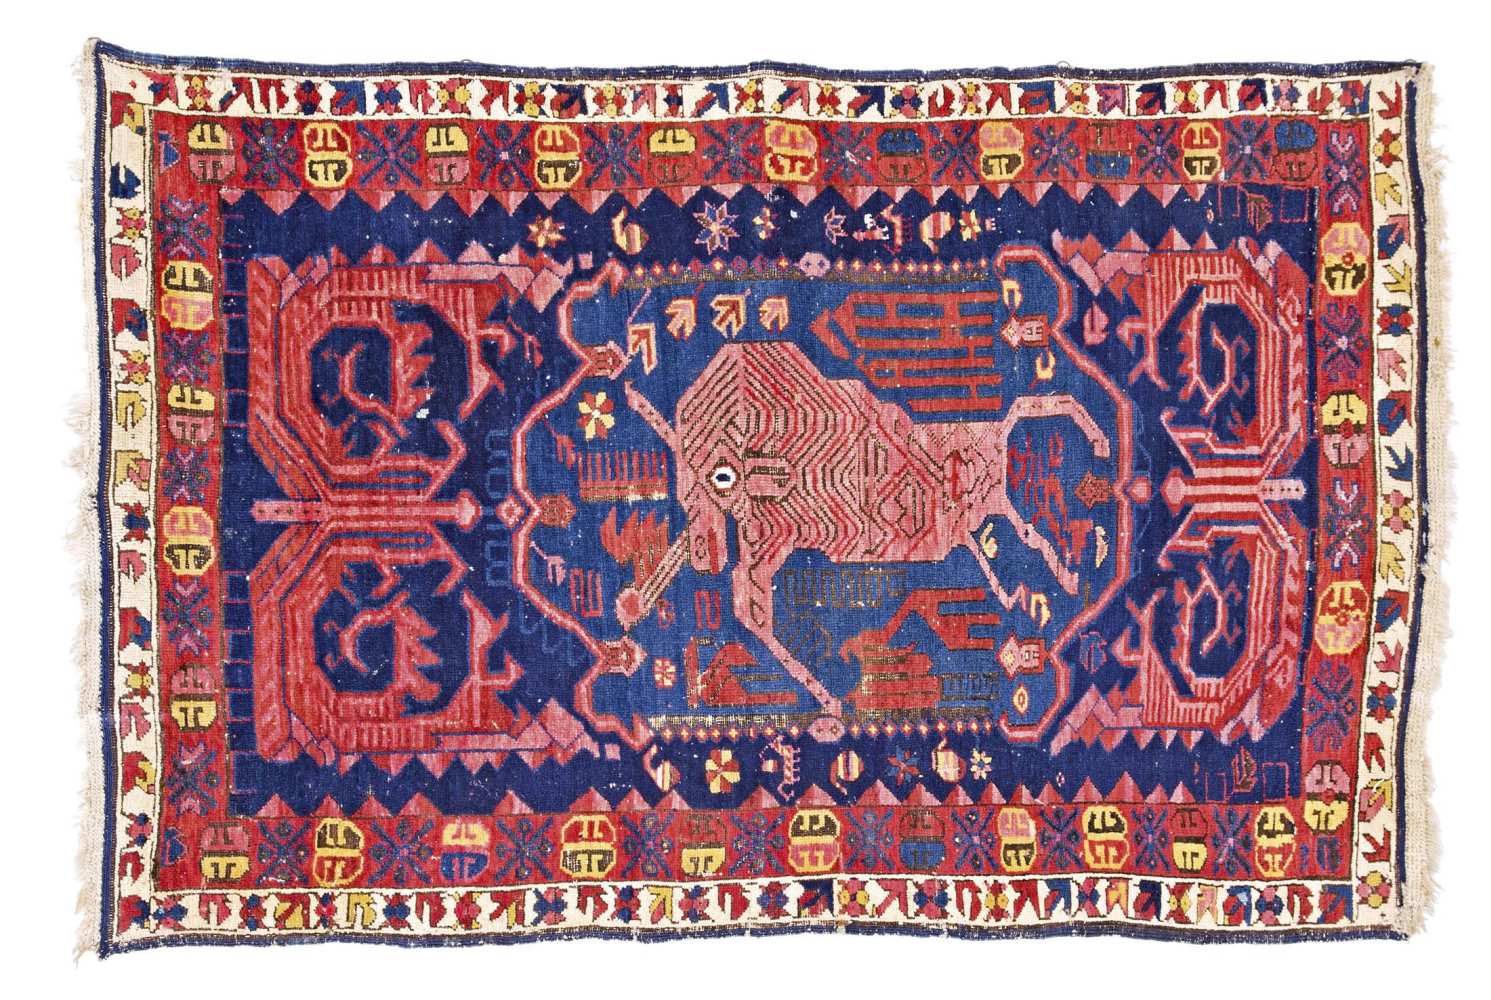 Caucasian-Seychour-rug around 1890, ghiordes-knot, worn, damaged, moth-eaten, 107*165 cm